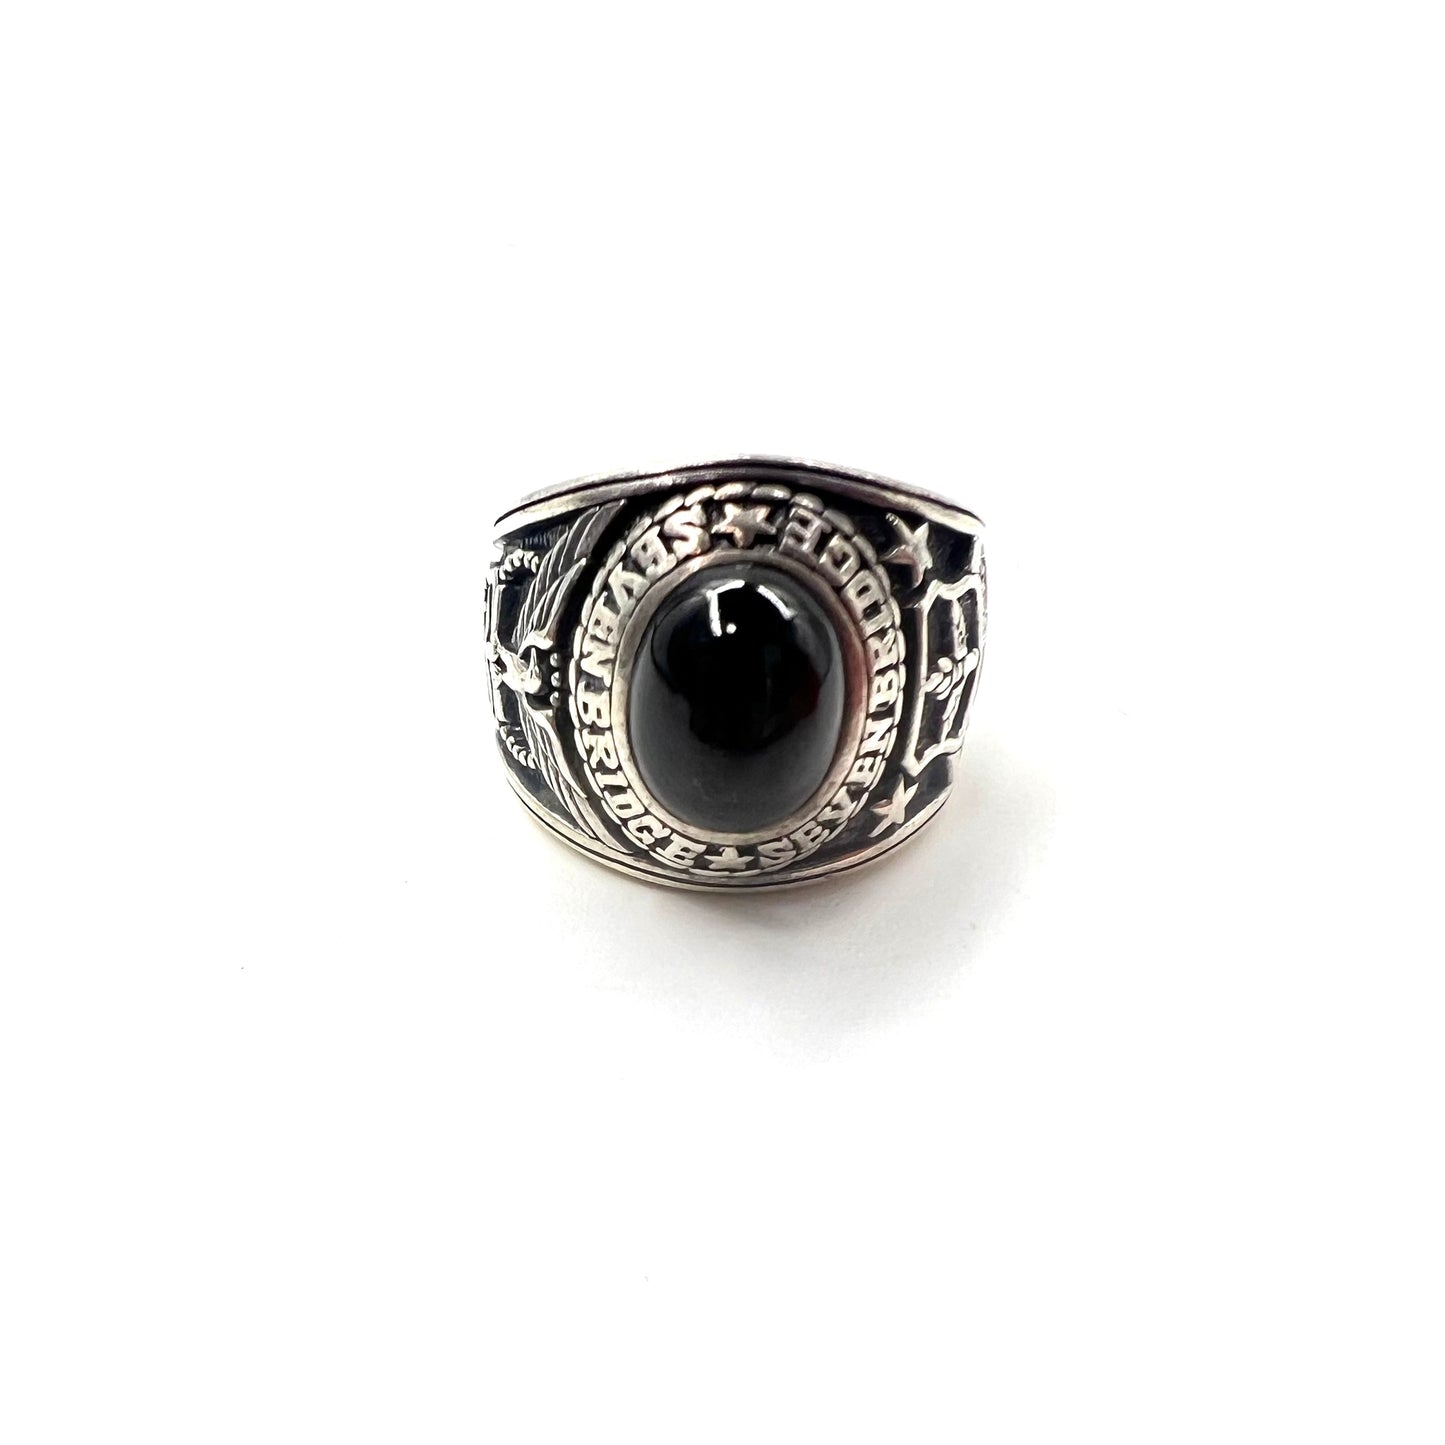 USAF College Ring No. 15 Silver Silver 925 Black Onyx SEVEN BRIDGE 